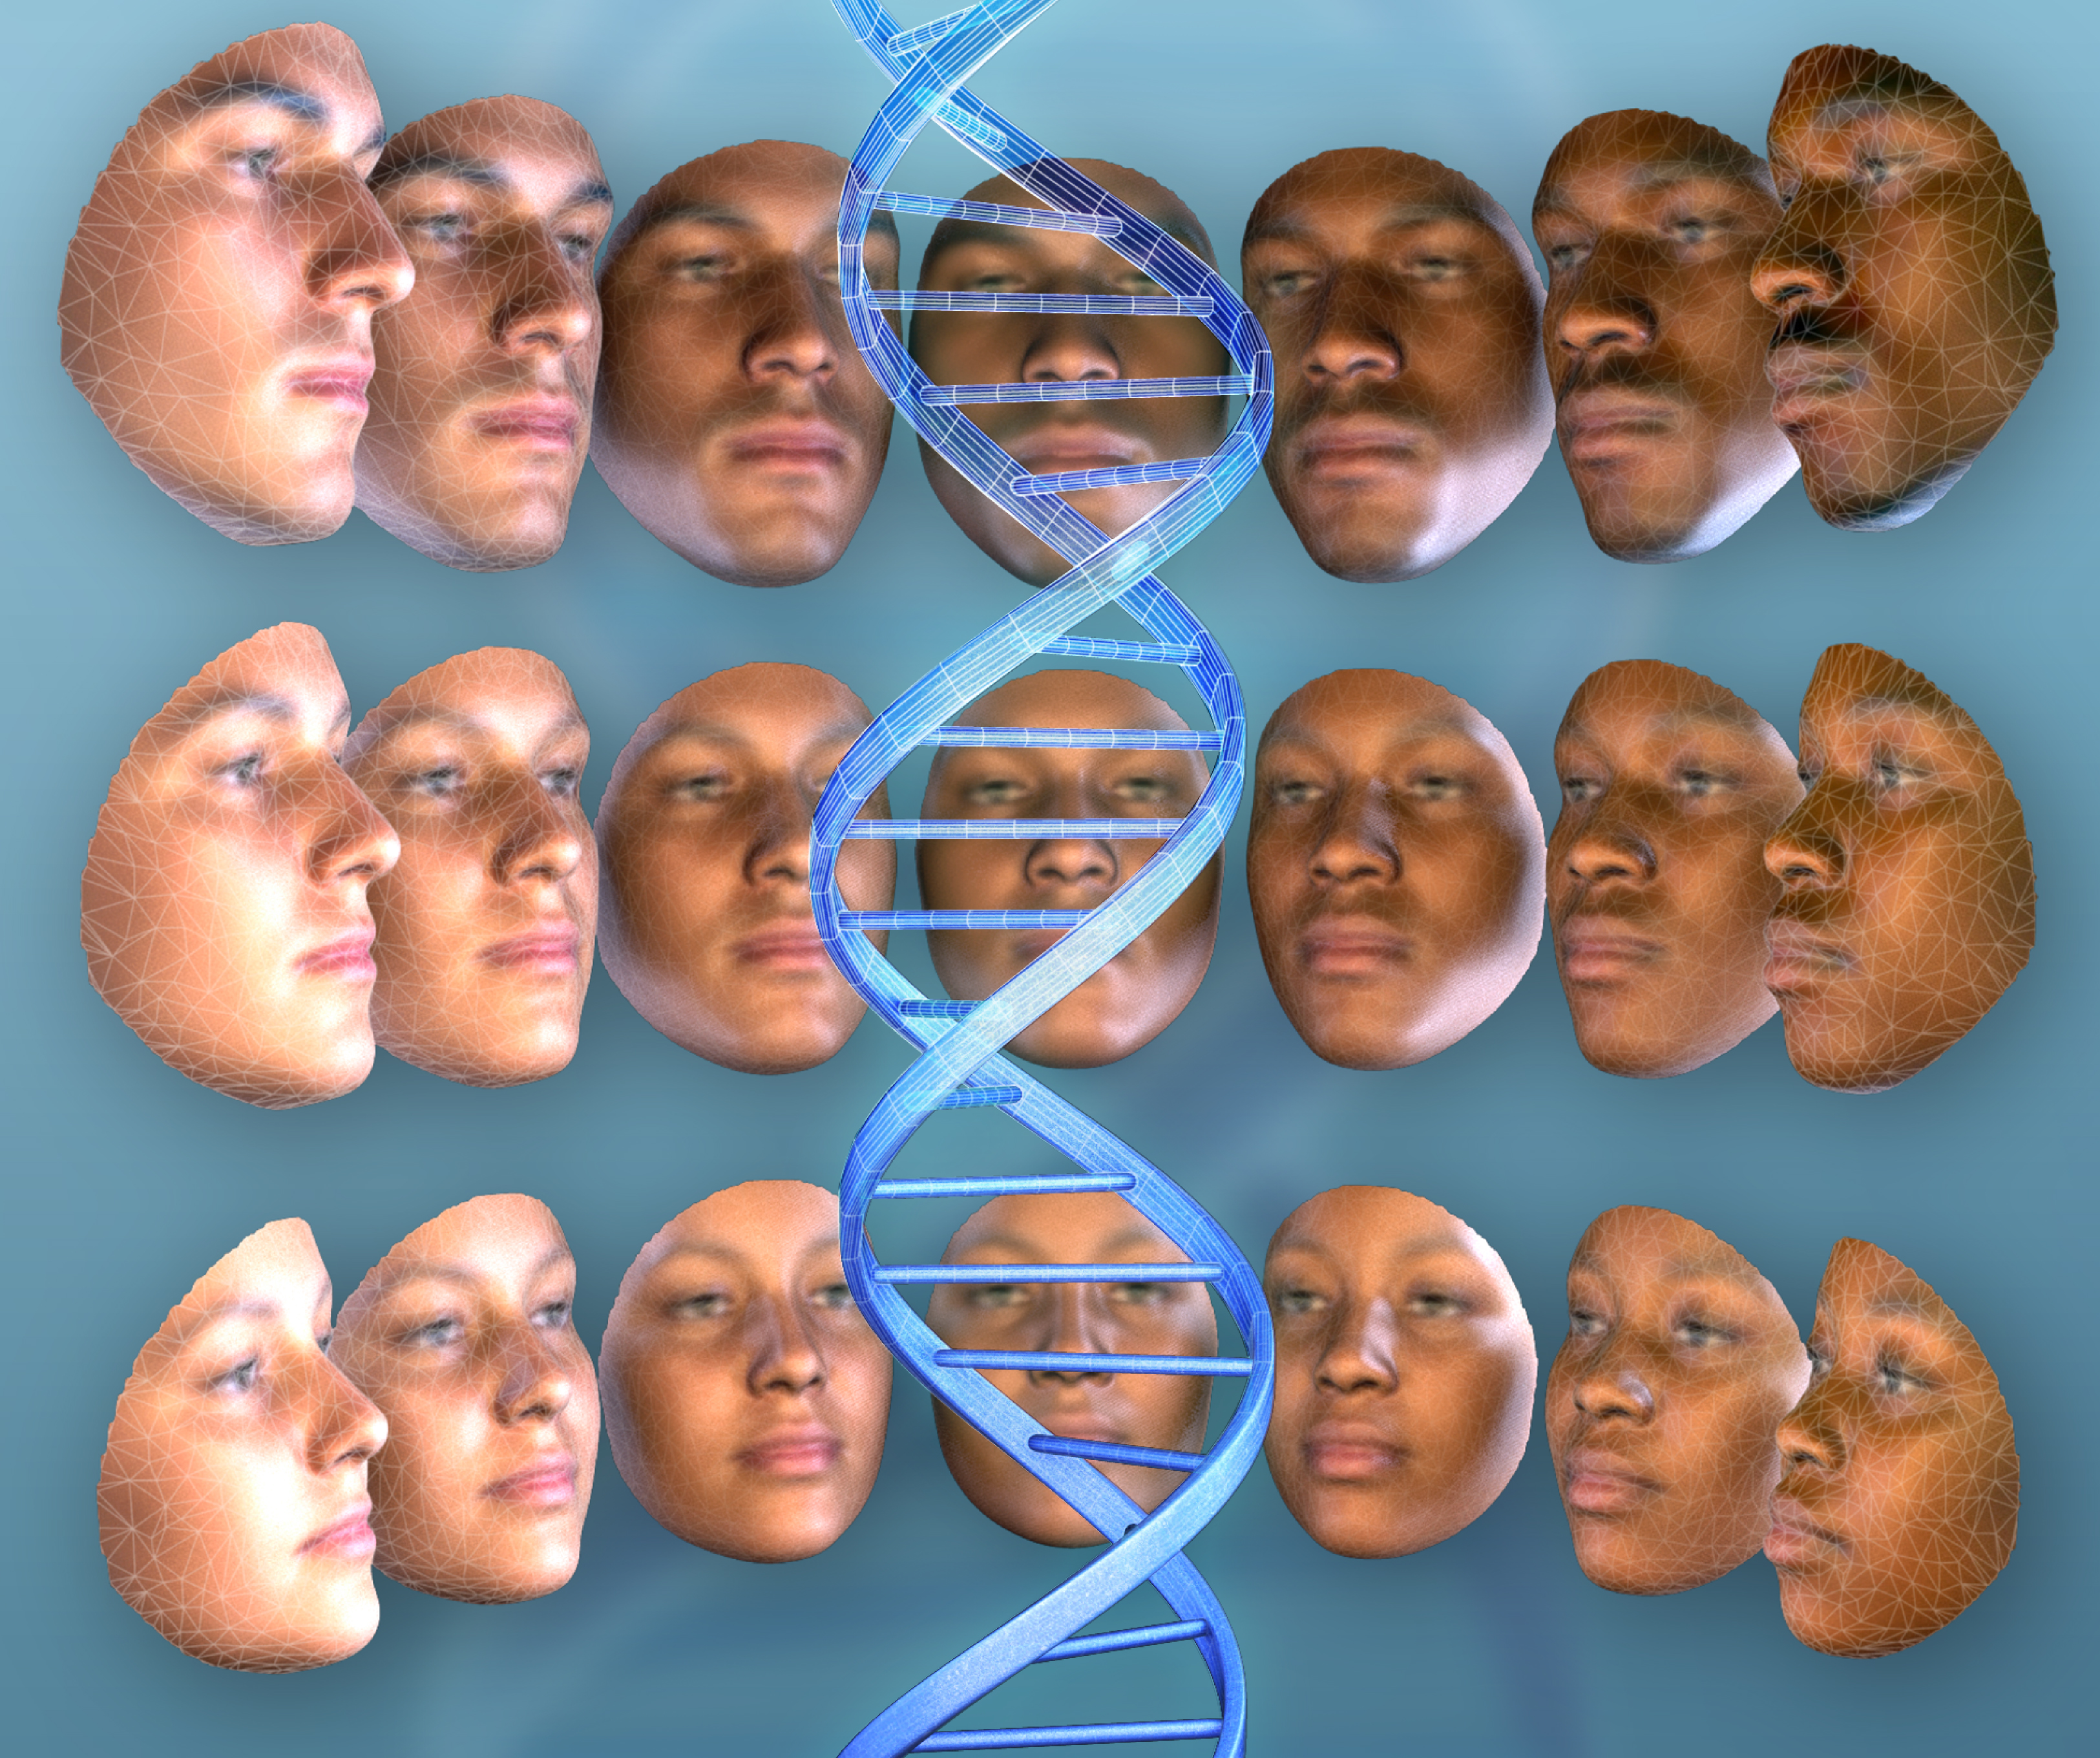 6 генетика человека. Разные лица. Расовый портрет. Генетическое разнообразие. Интересные лица.